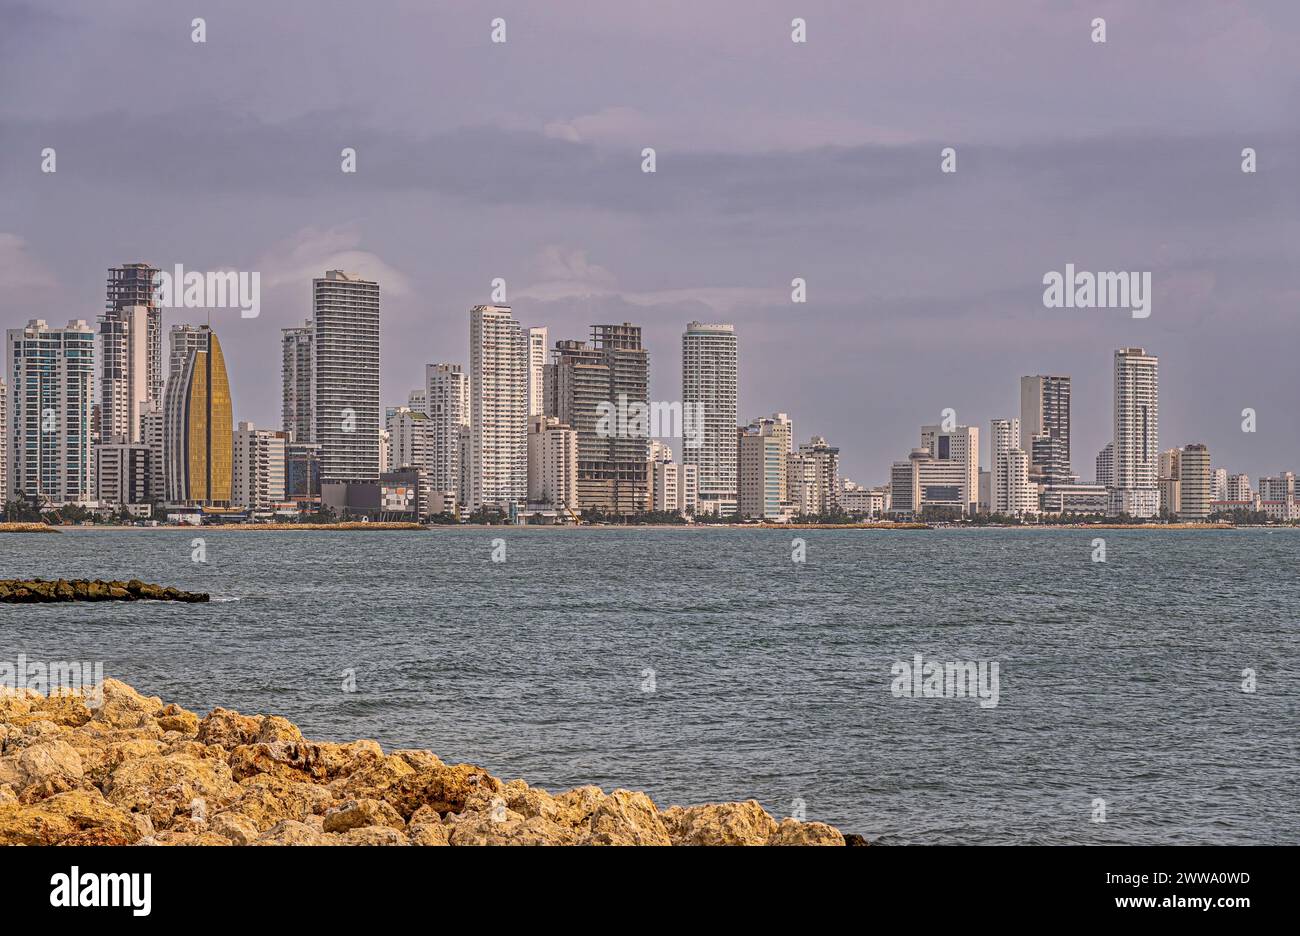 Cartagena, Kolumbien - 25. Juli 2023: Von der Stelle aus gesehen, wo die Calle 33 auf die Avenida Santander trifft, die Skyline der Tall Buildings auf der nordwestlichen Seite der Halbinsel Bocagrande. Fels Stockfoto